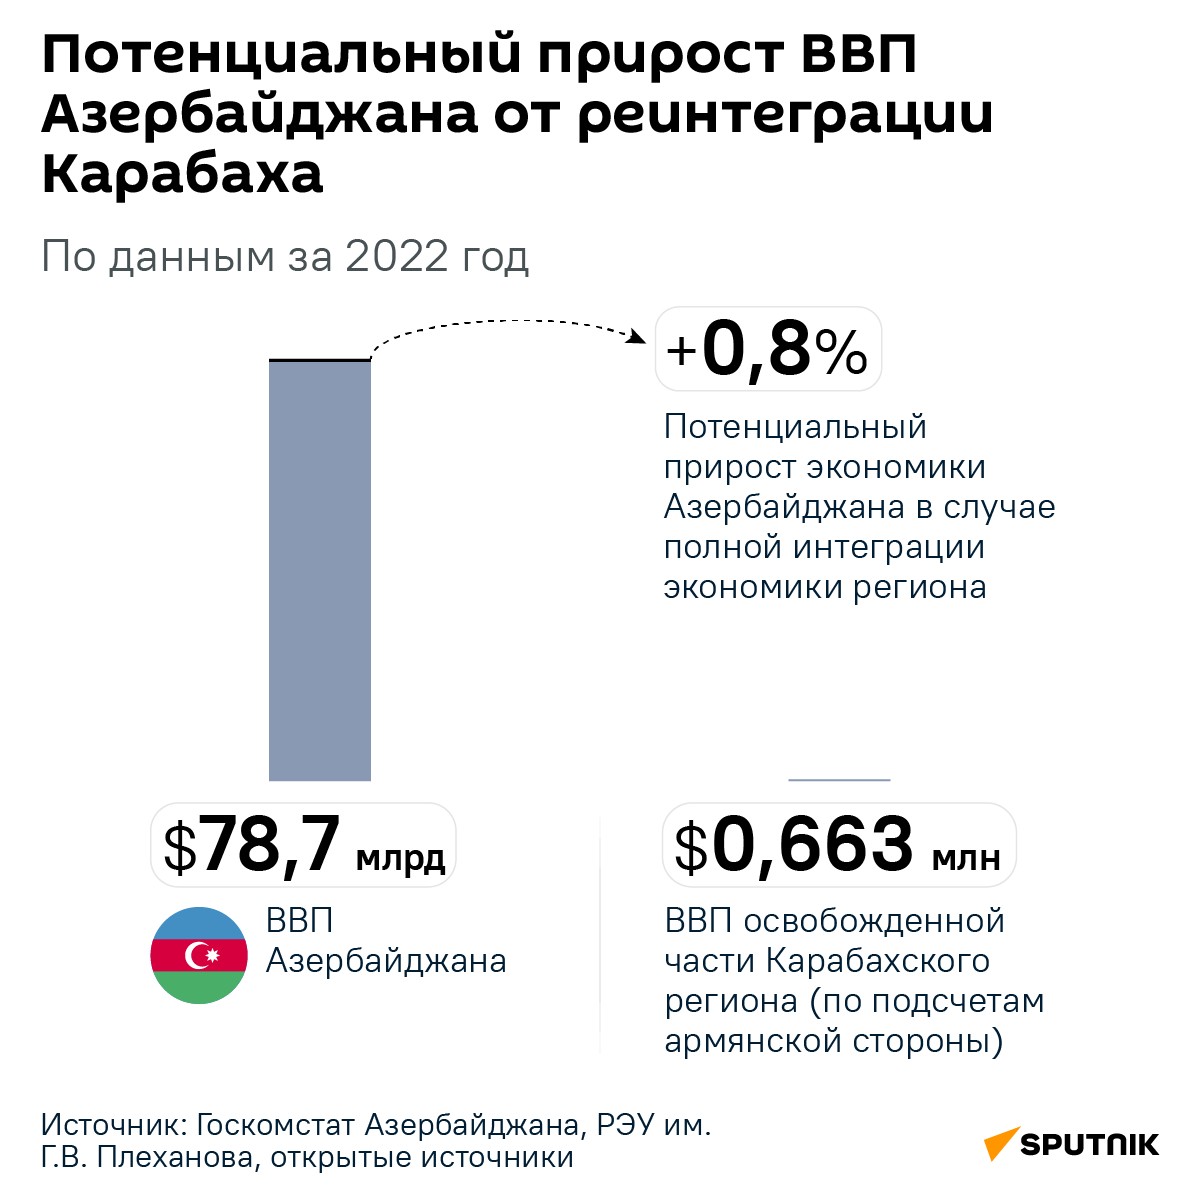 Инфографика: Потенциальный прирост Азербайджана от реинтеграции Карабаха - Sputnik Азербайджан